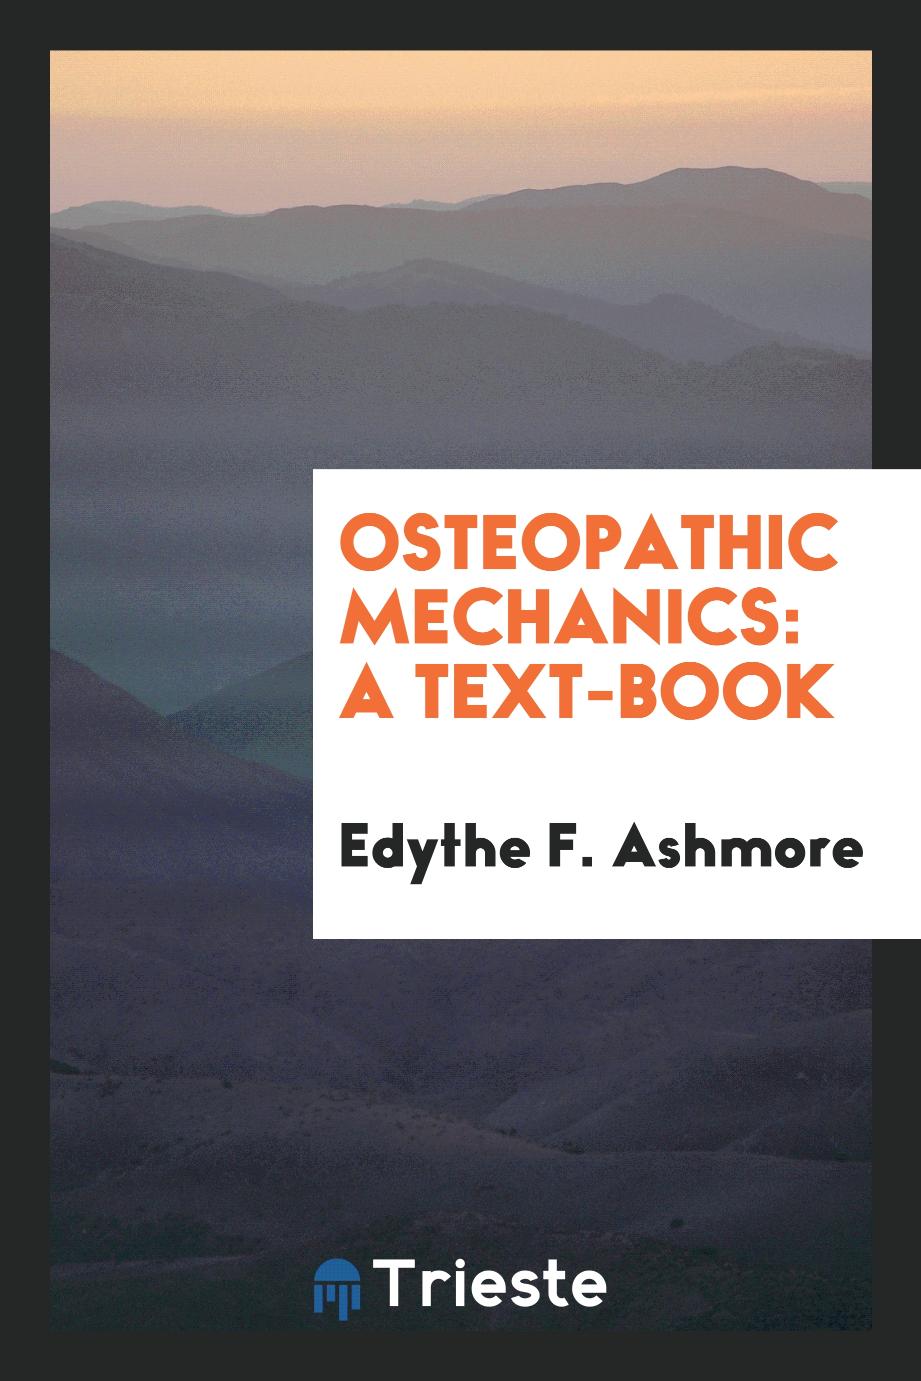 Osteopathic mechanics: a text-book